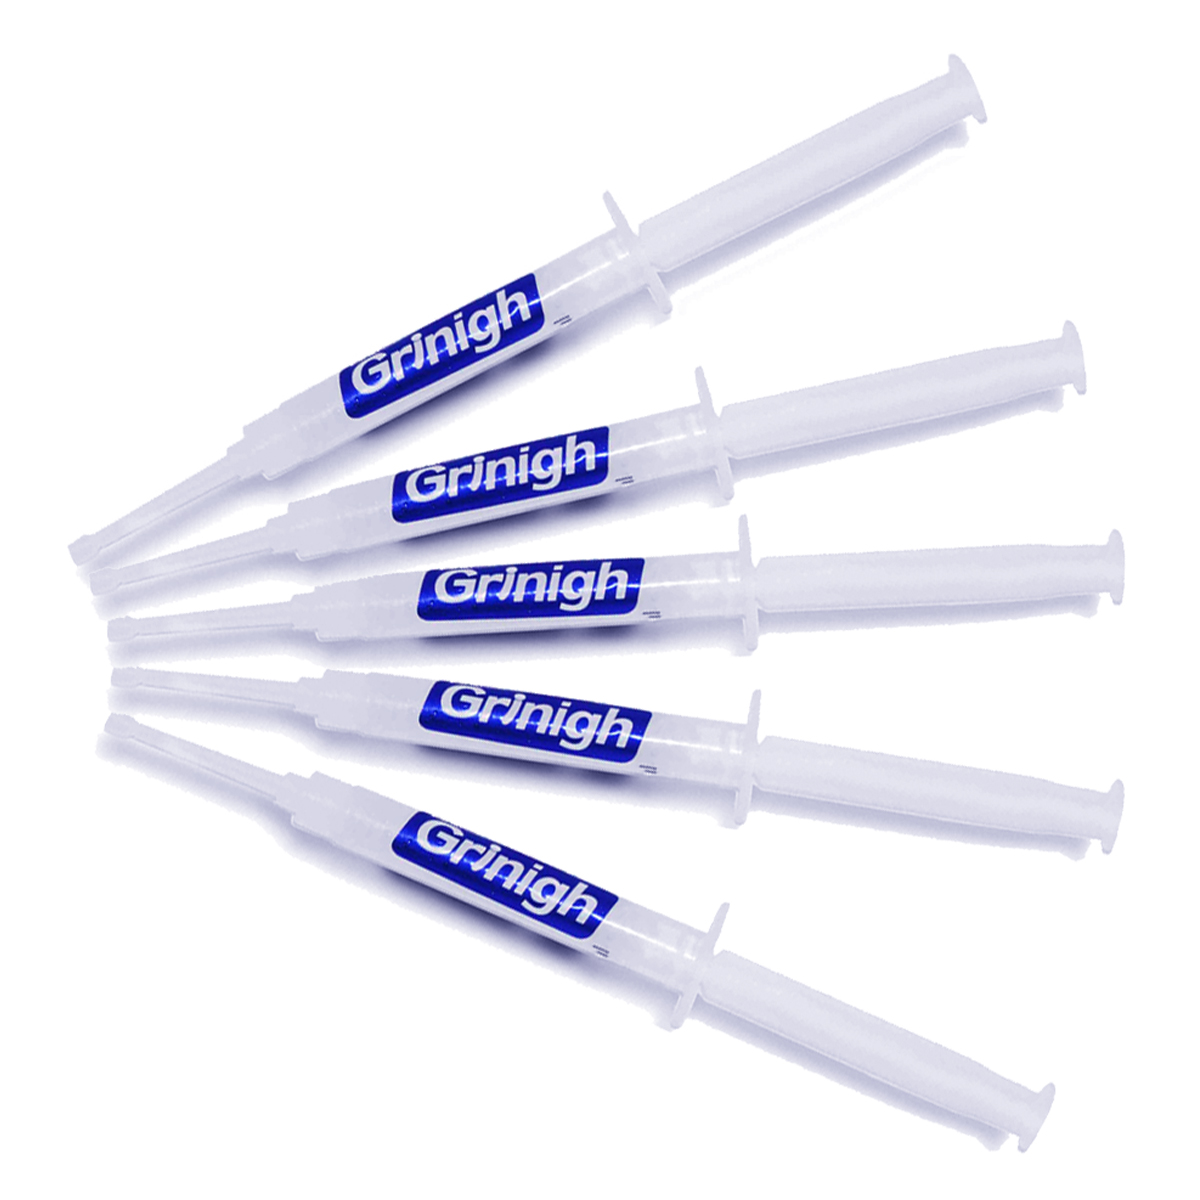 Grin365 3 ml Teeth Whitening Gel vervanging spuiten voor Whitening System - Refill Kit Met meer dan 15 behandelingen